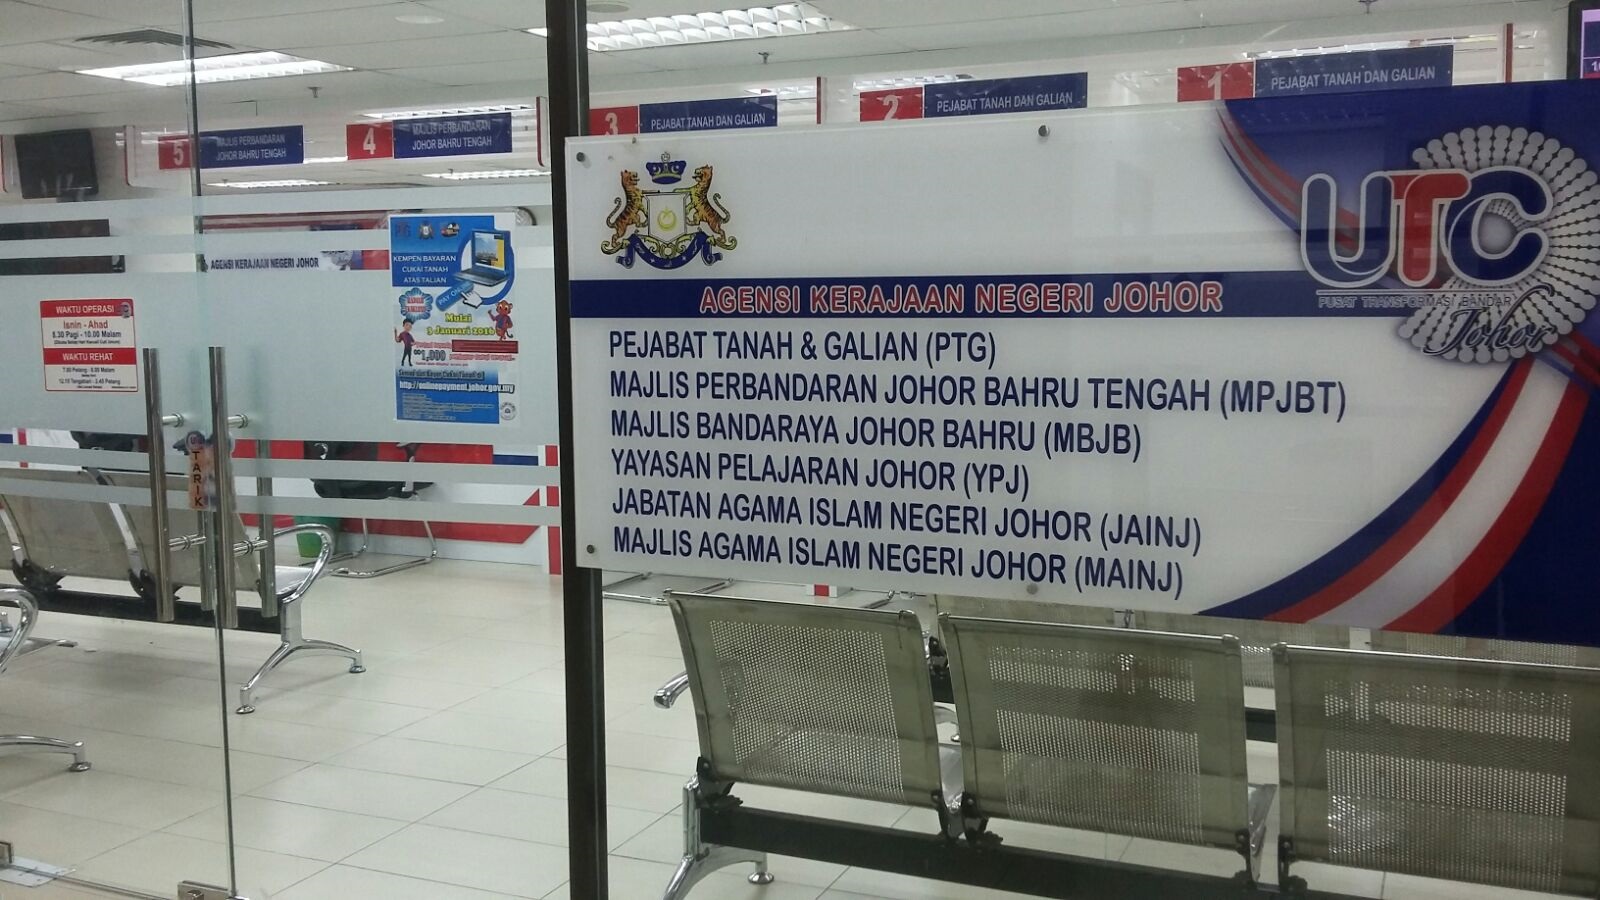 Majlis Agama Islam Negeri Johor (MAINJ)